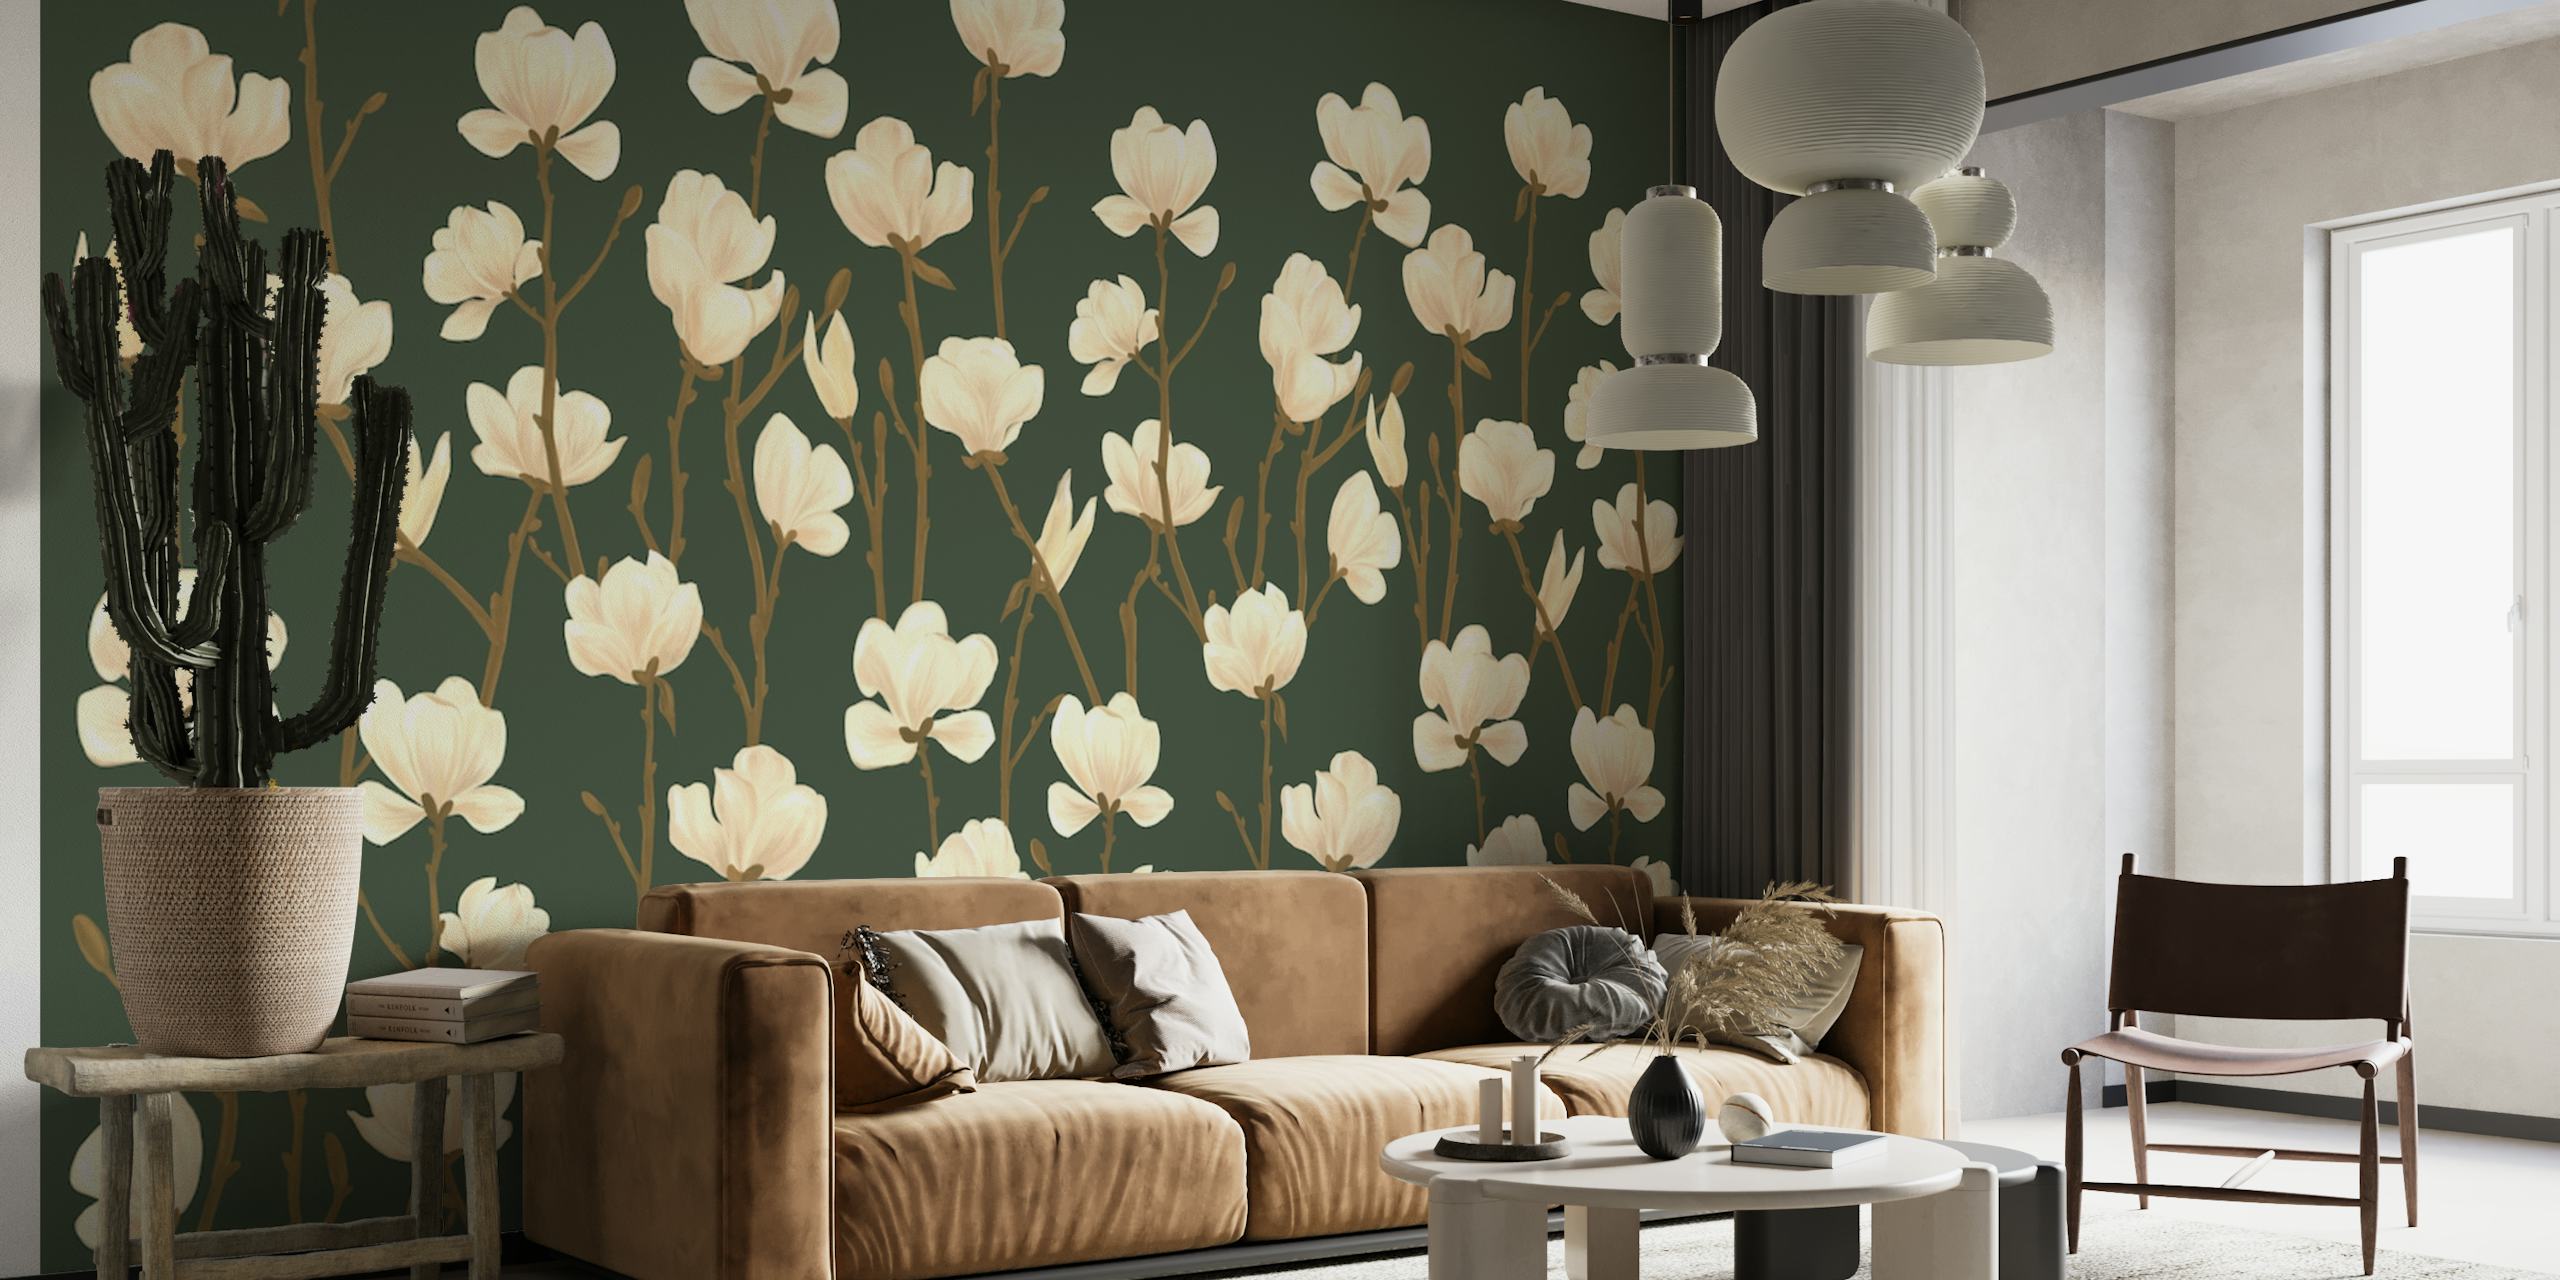 Magnolias wallpaper